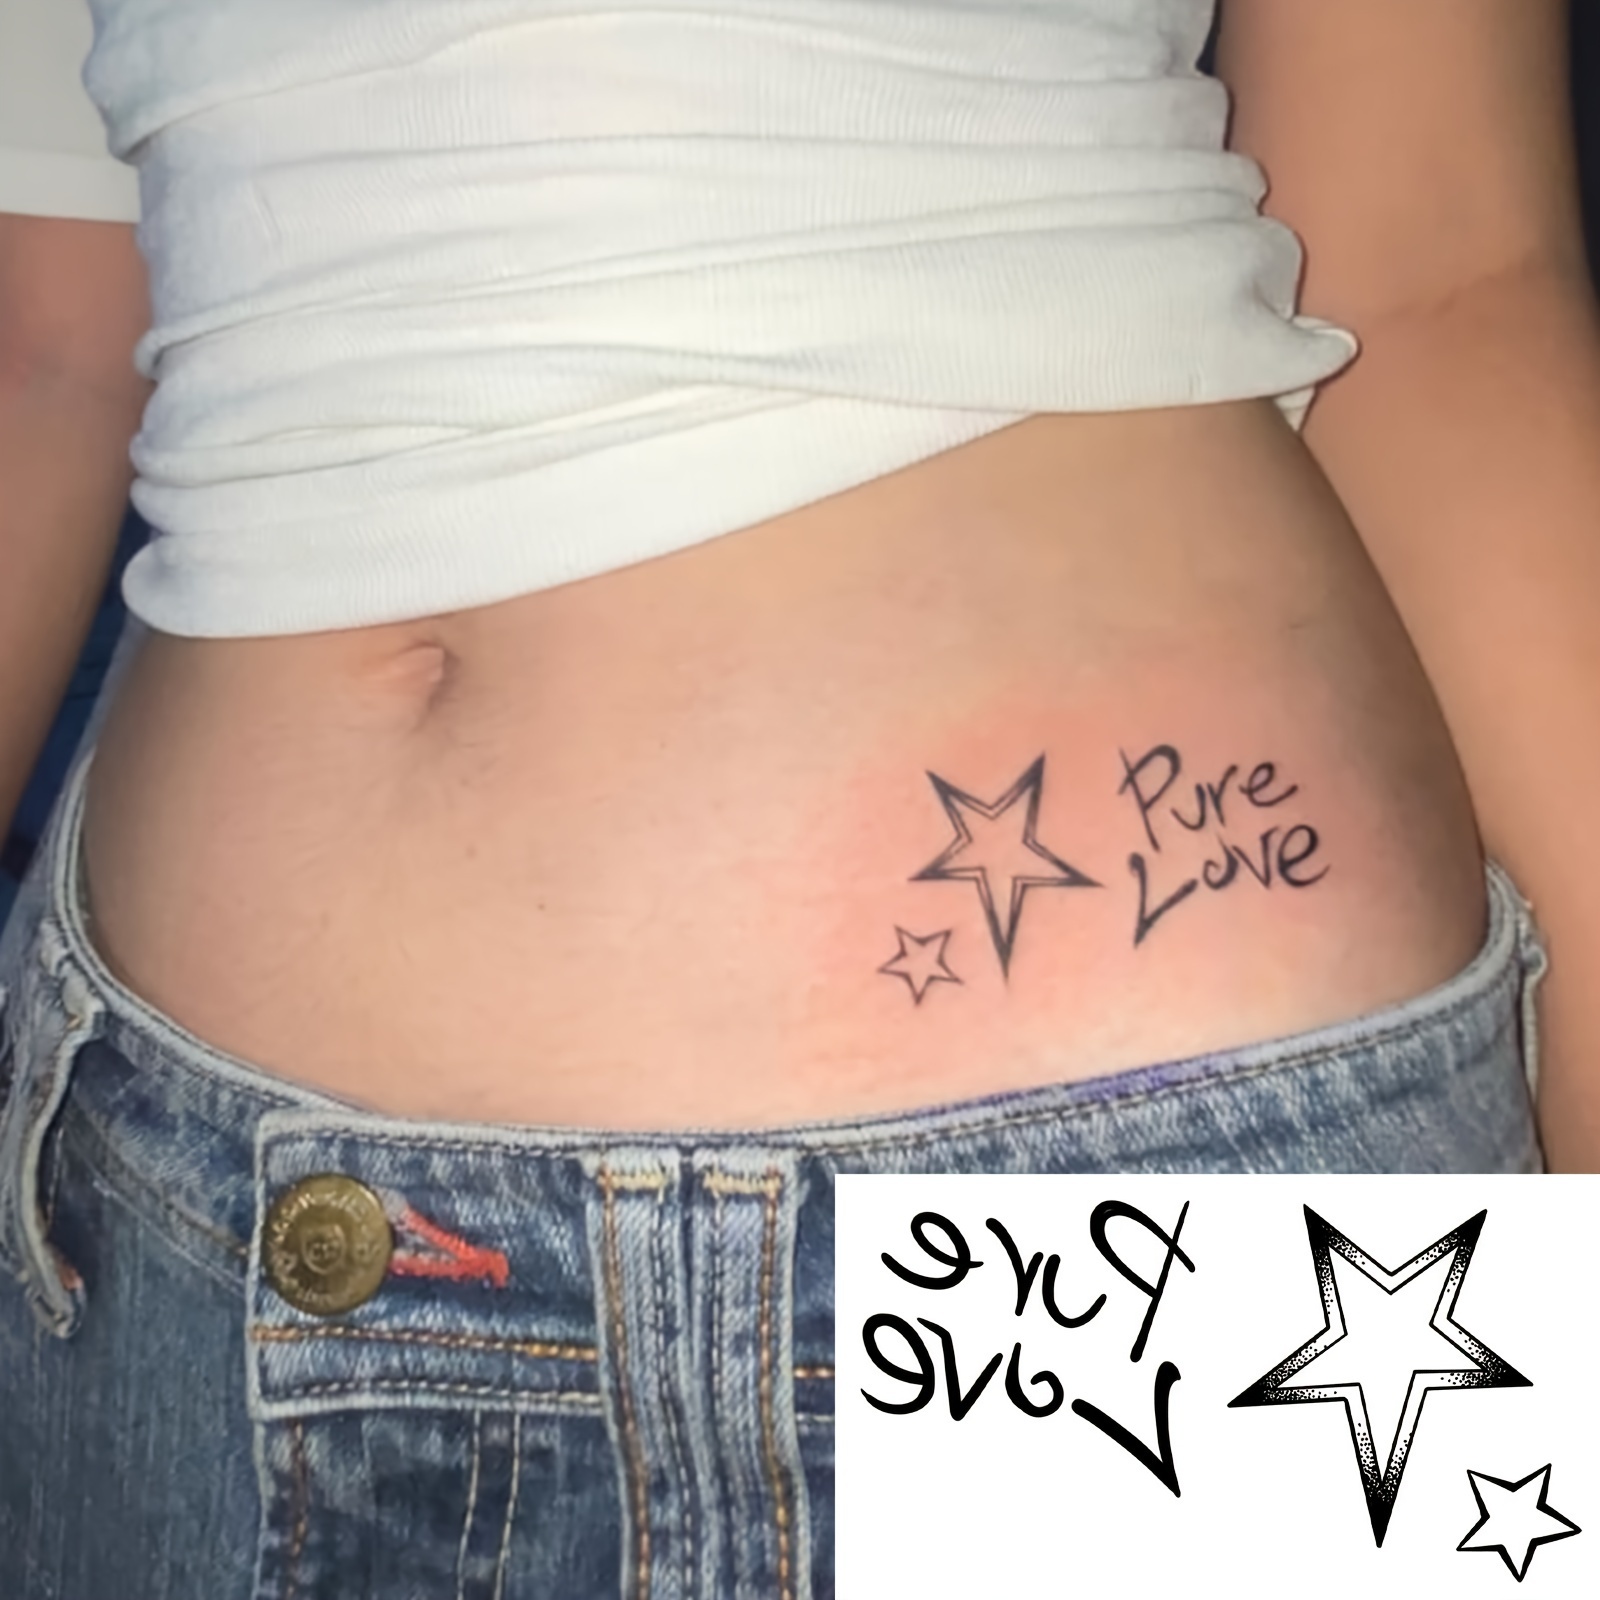 Sterne Temporäre Tattoos - Kostenlose Rückgabe Innerhalb Von 90